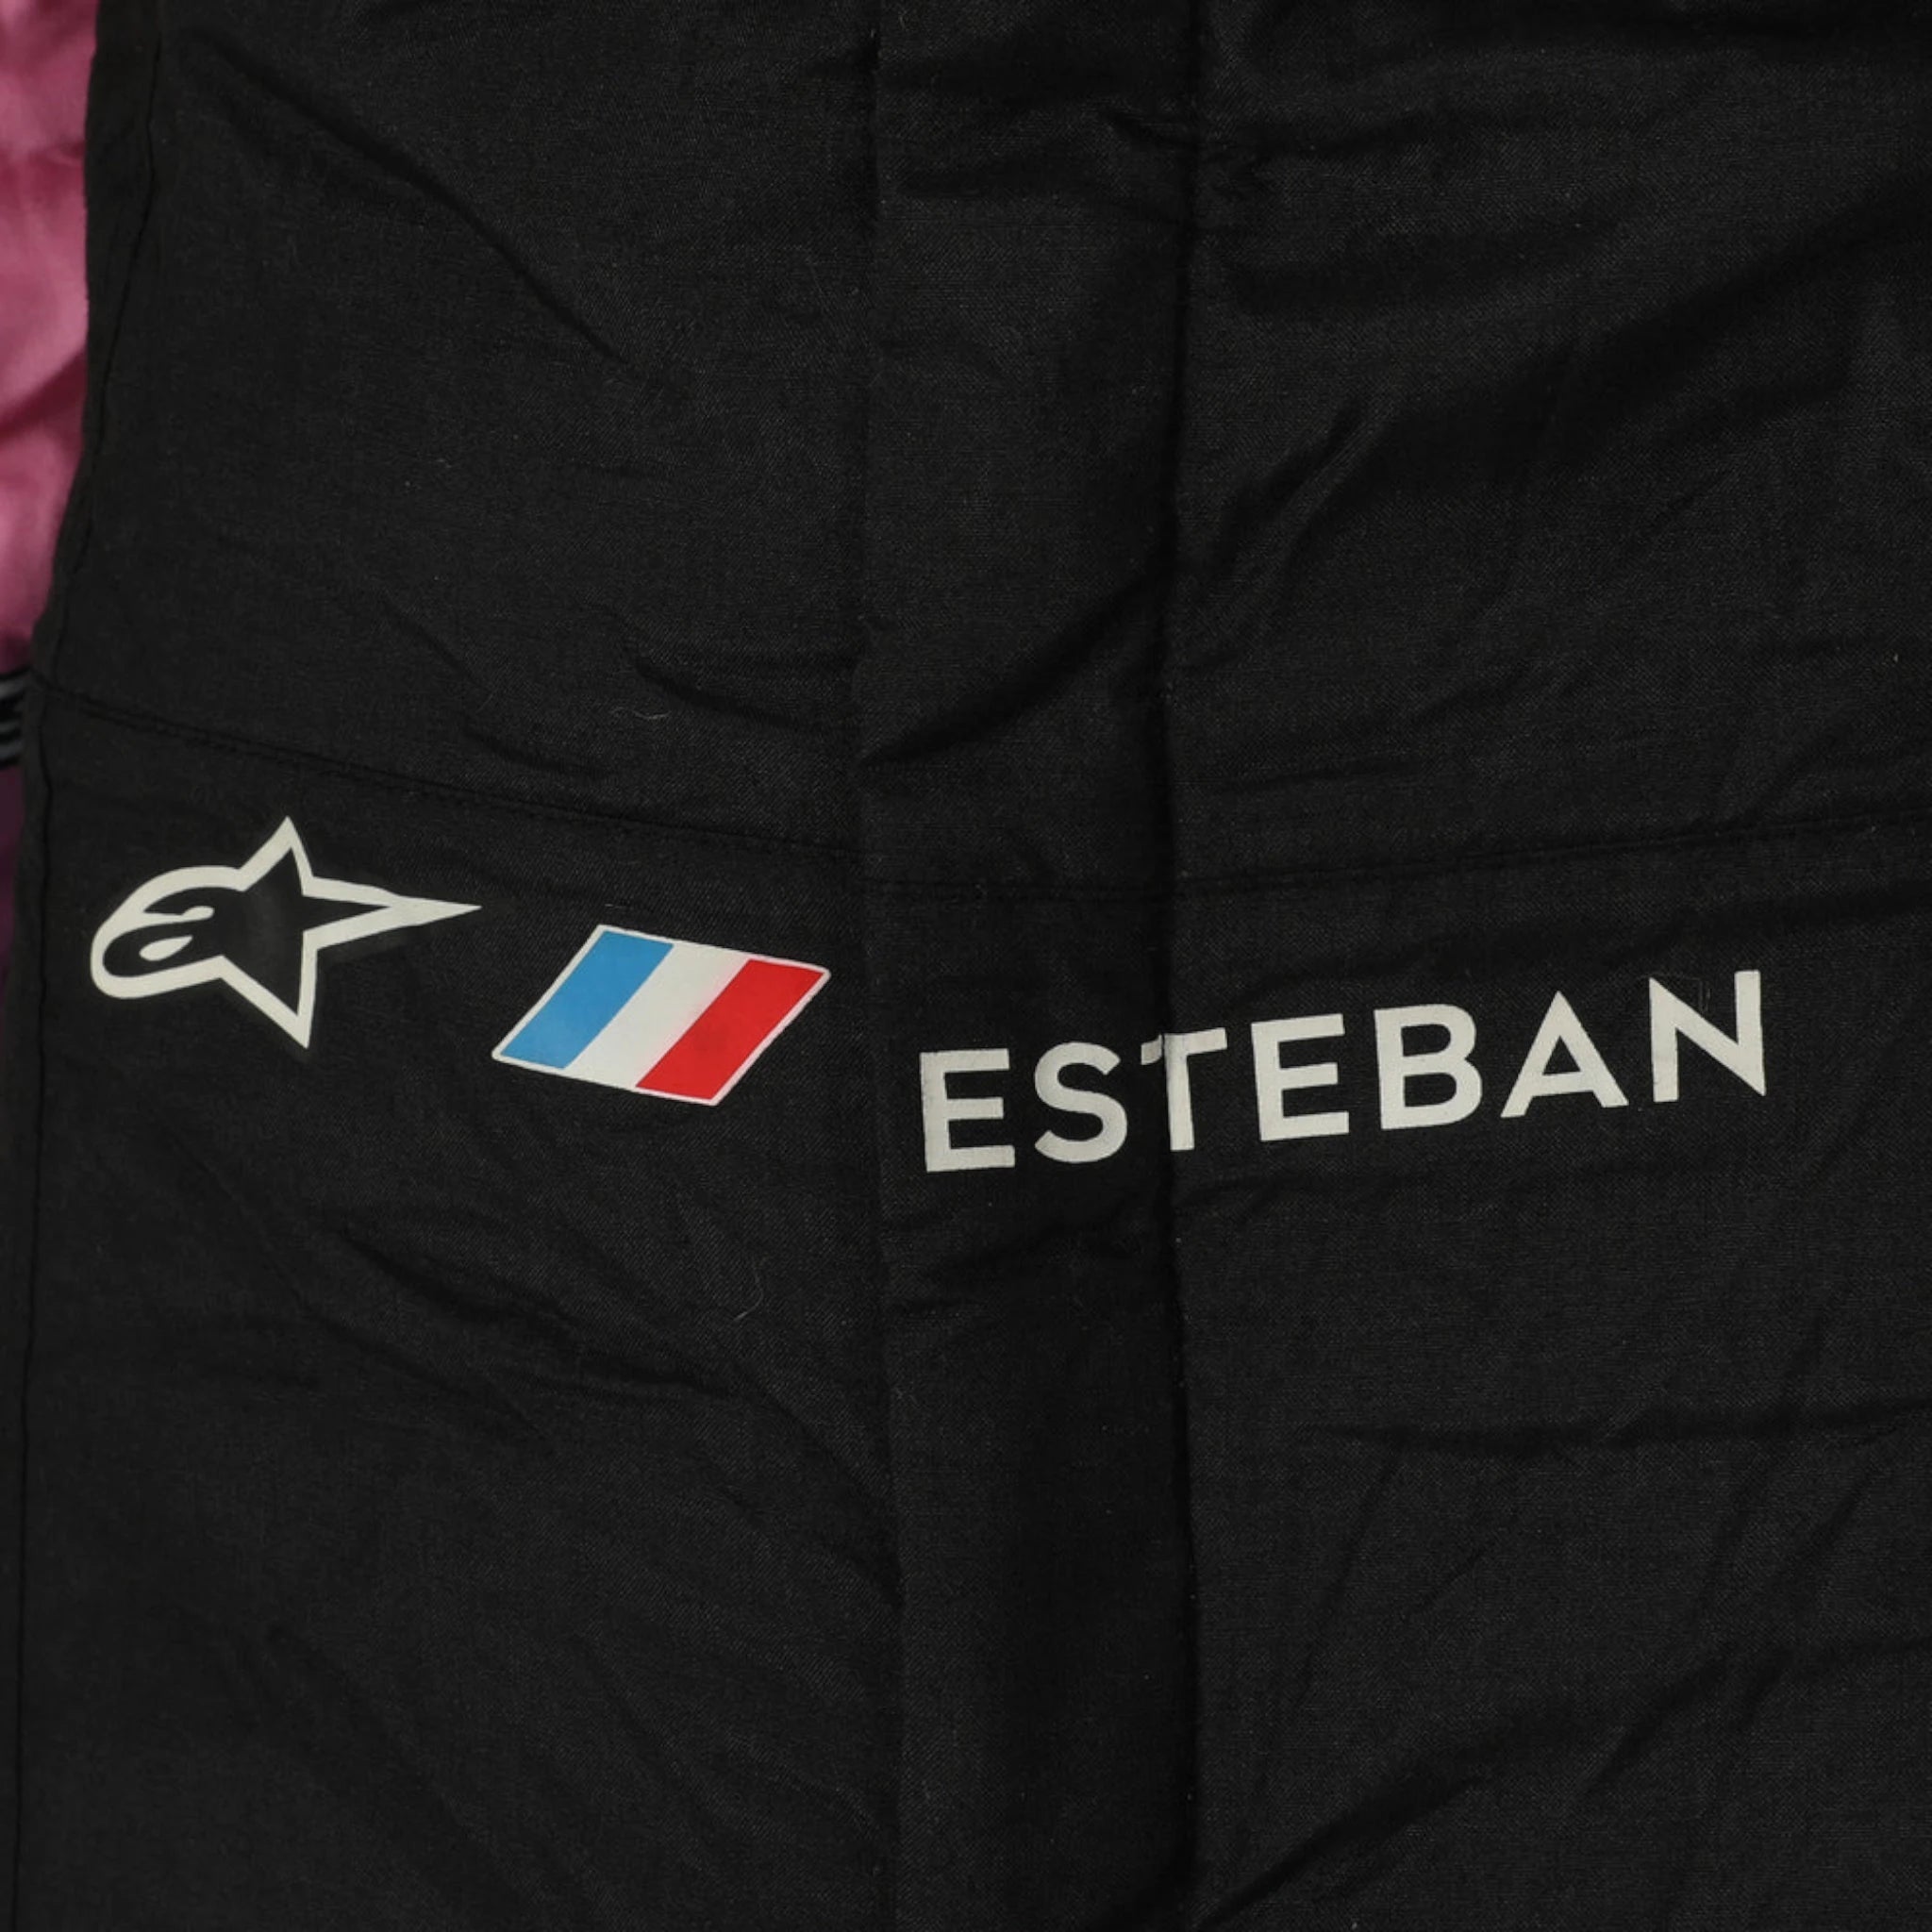 2023 Esteban Ocon BWT Alpine F1 Team Race Suit - US GP